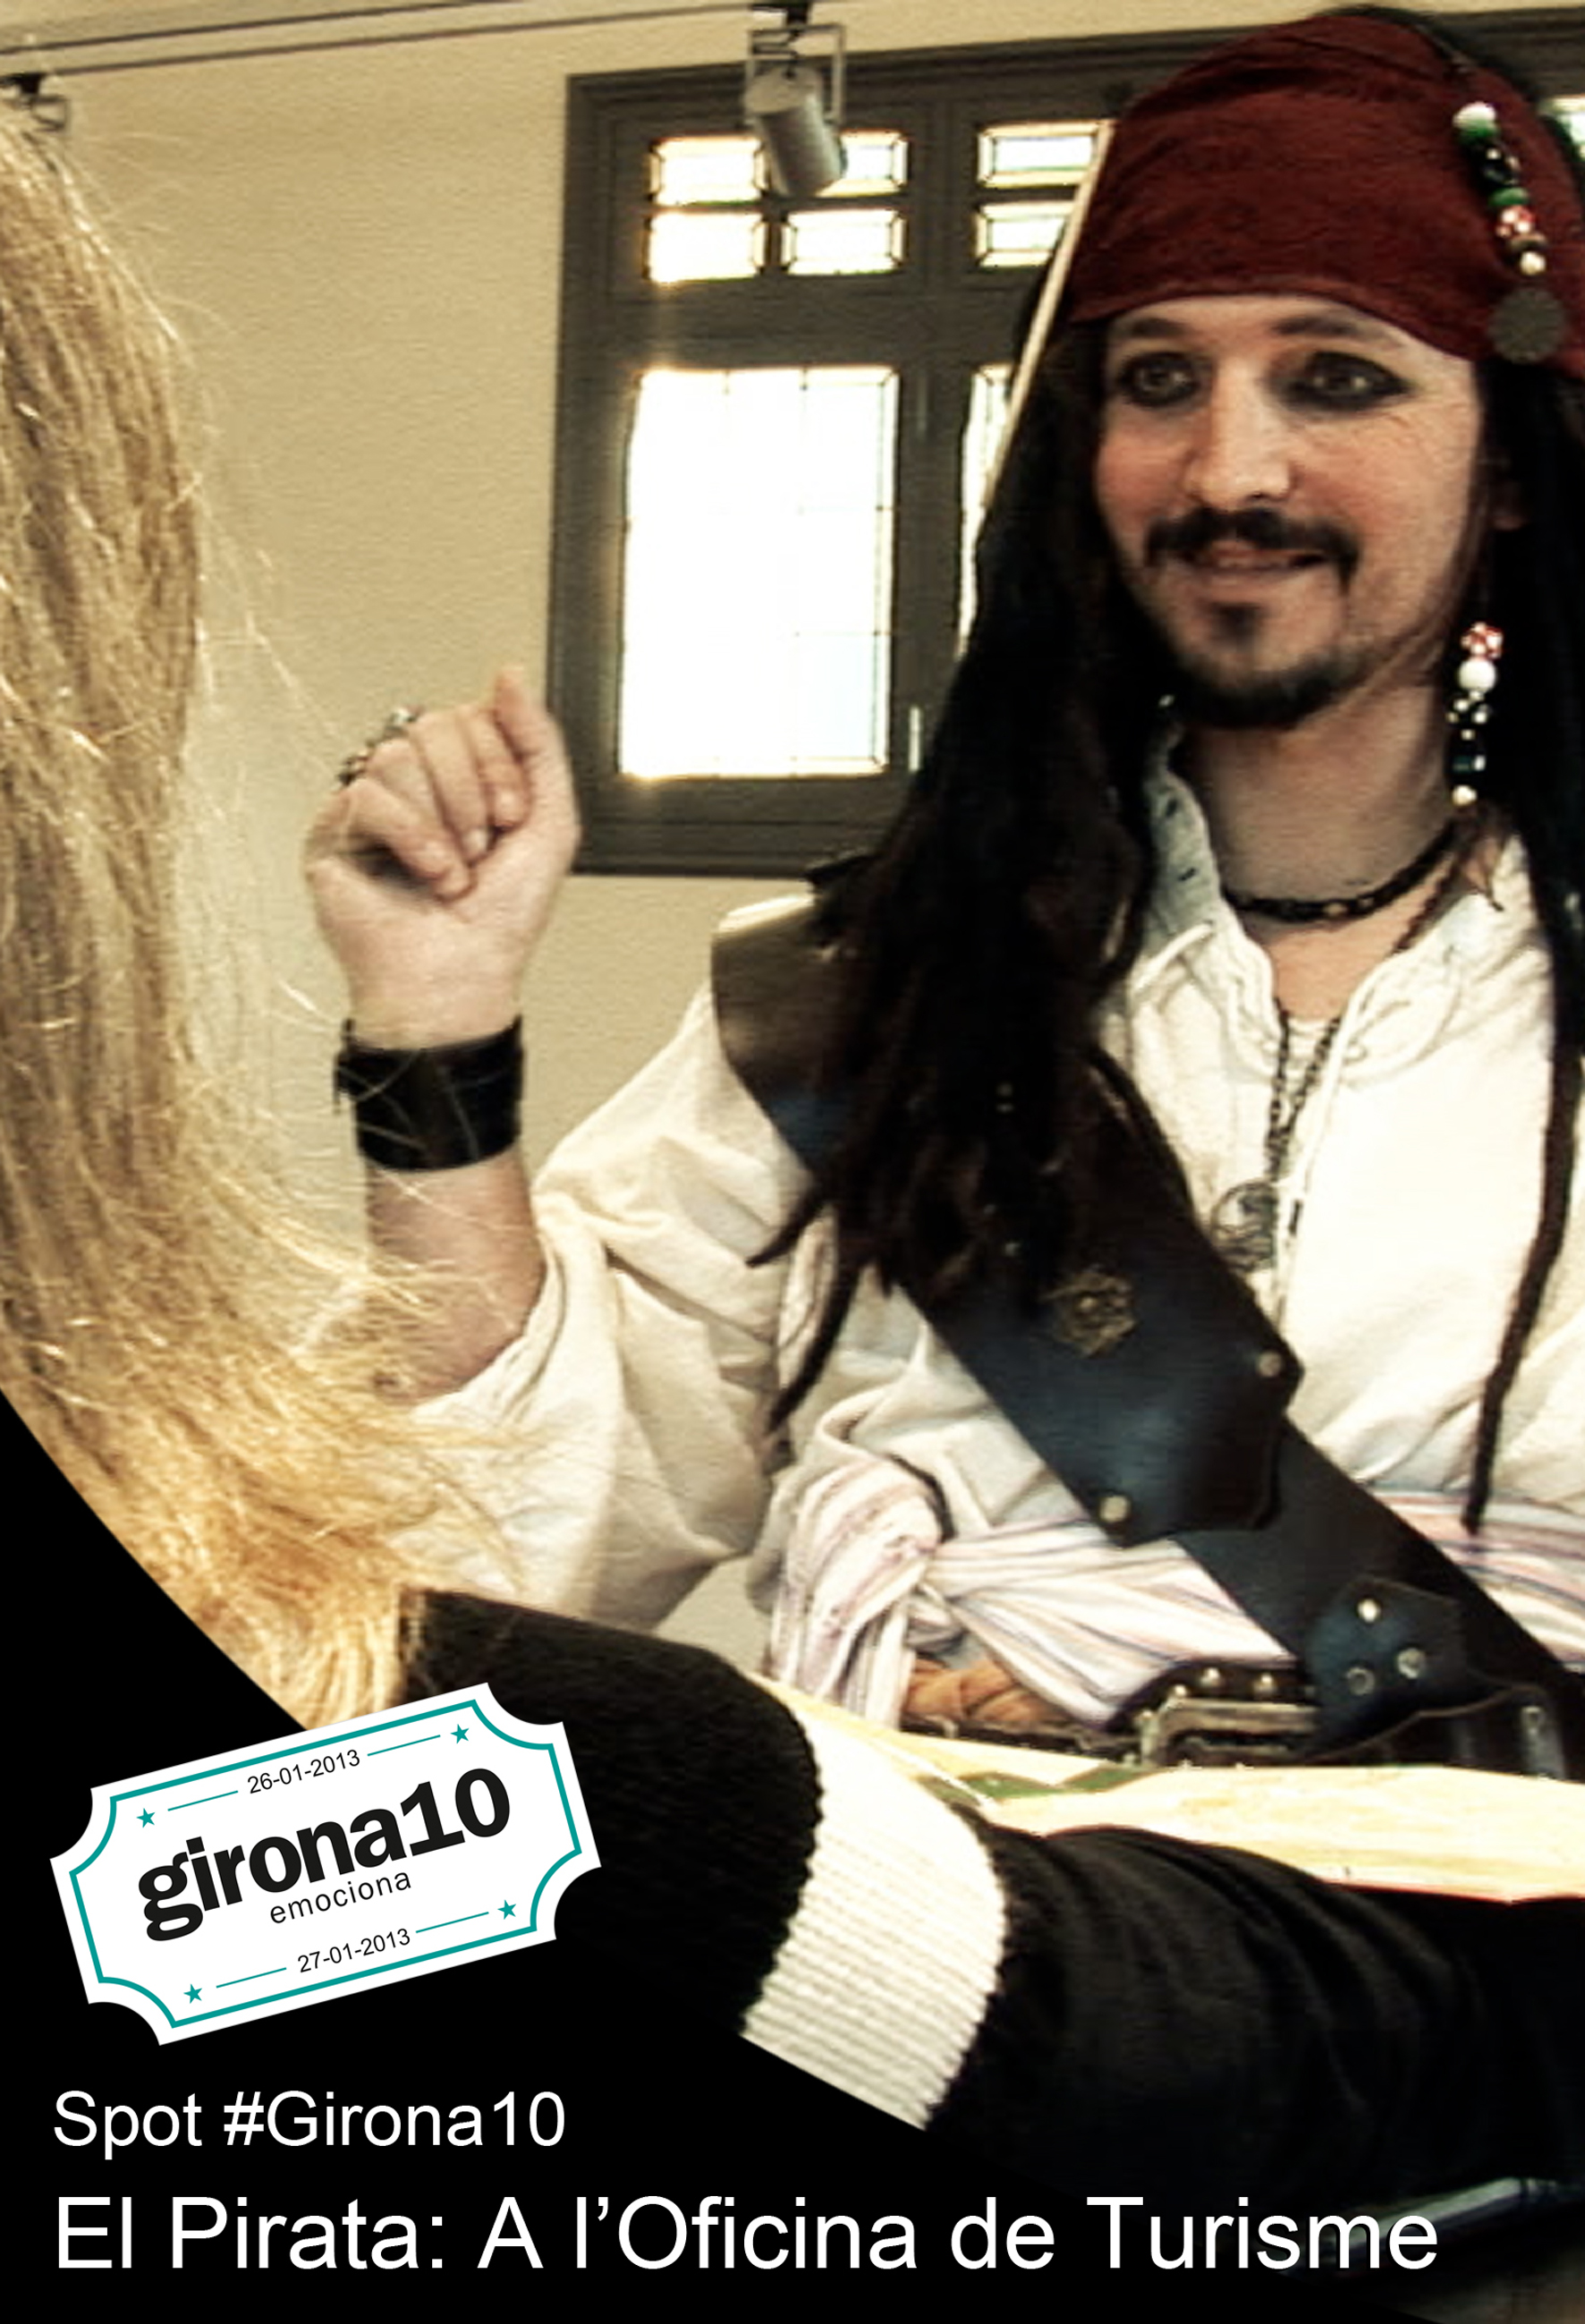 Girona10: el pirata - a l'oficina de turisme